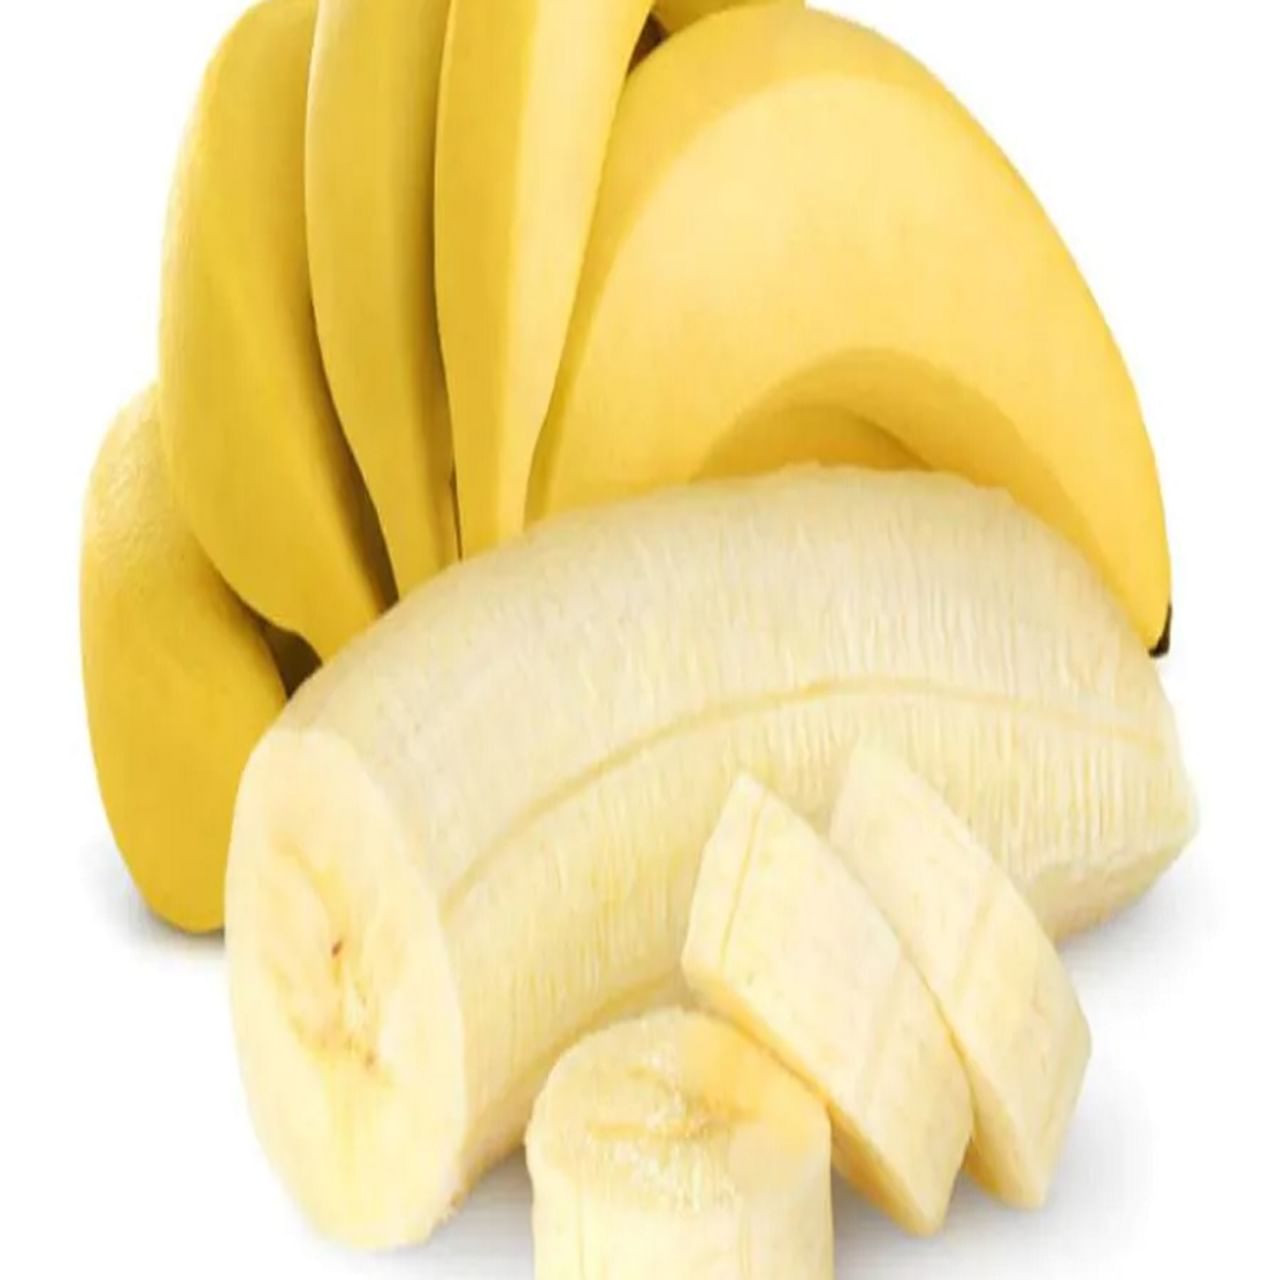 लहान मुलांना दररोज अनेक महत्त्वपूर्ण पोषक तत्वांनी युक्त केळी खायला द्या. यामुळे ते निरोगी राहतात आणि ऊर्जा टिकून राहते. लहान मुलांनी नेहमीच निरोगी अन्न दिले पाहिजे. 